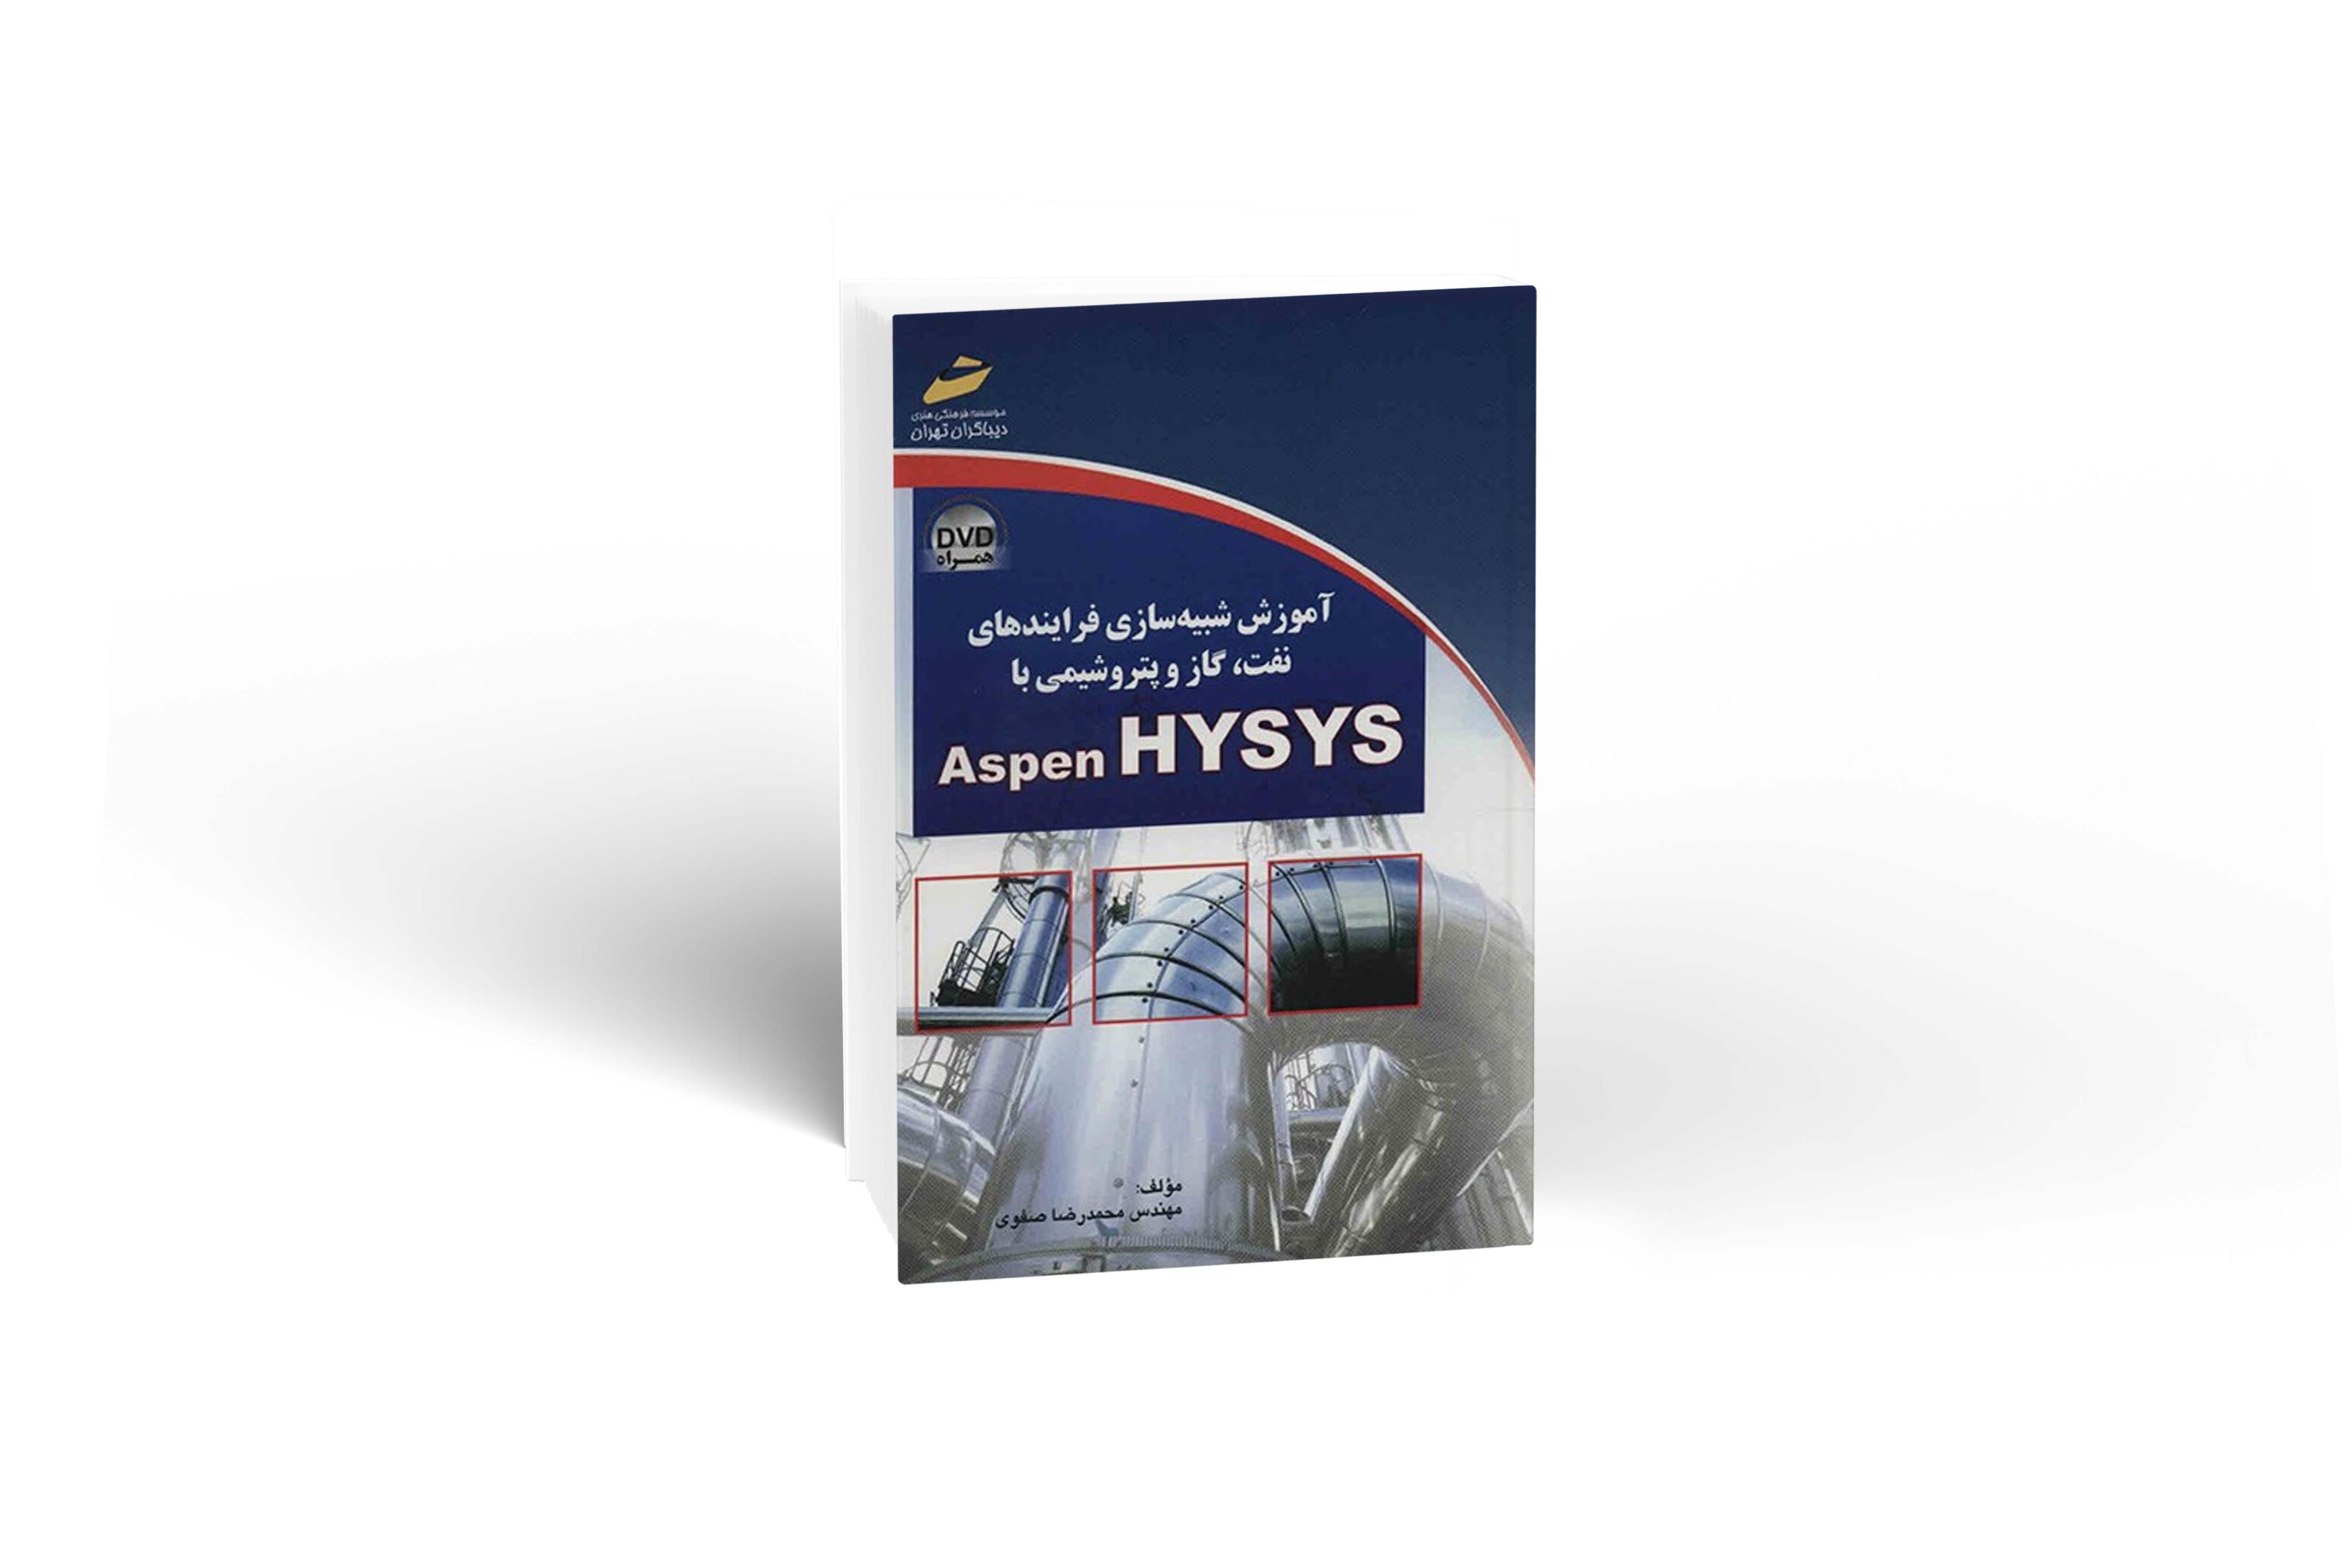  آموزش شبیه سازی با نرم افزار Aspen HYSYS 